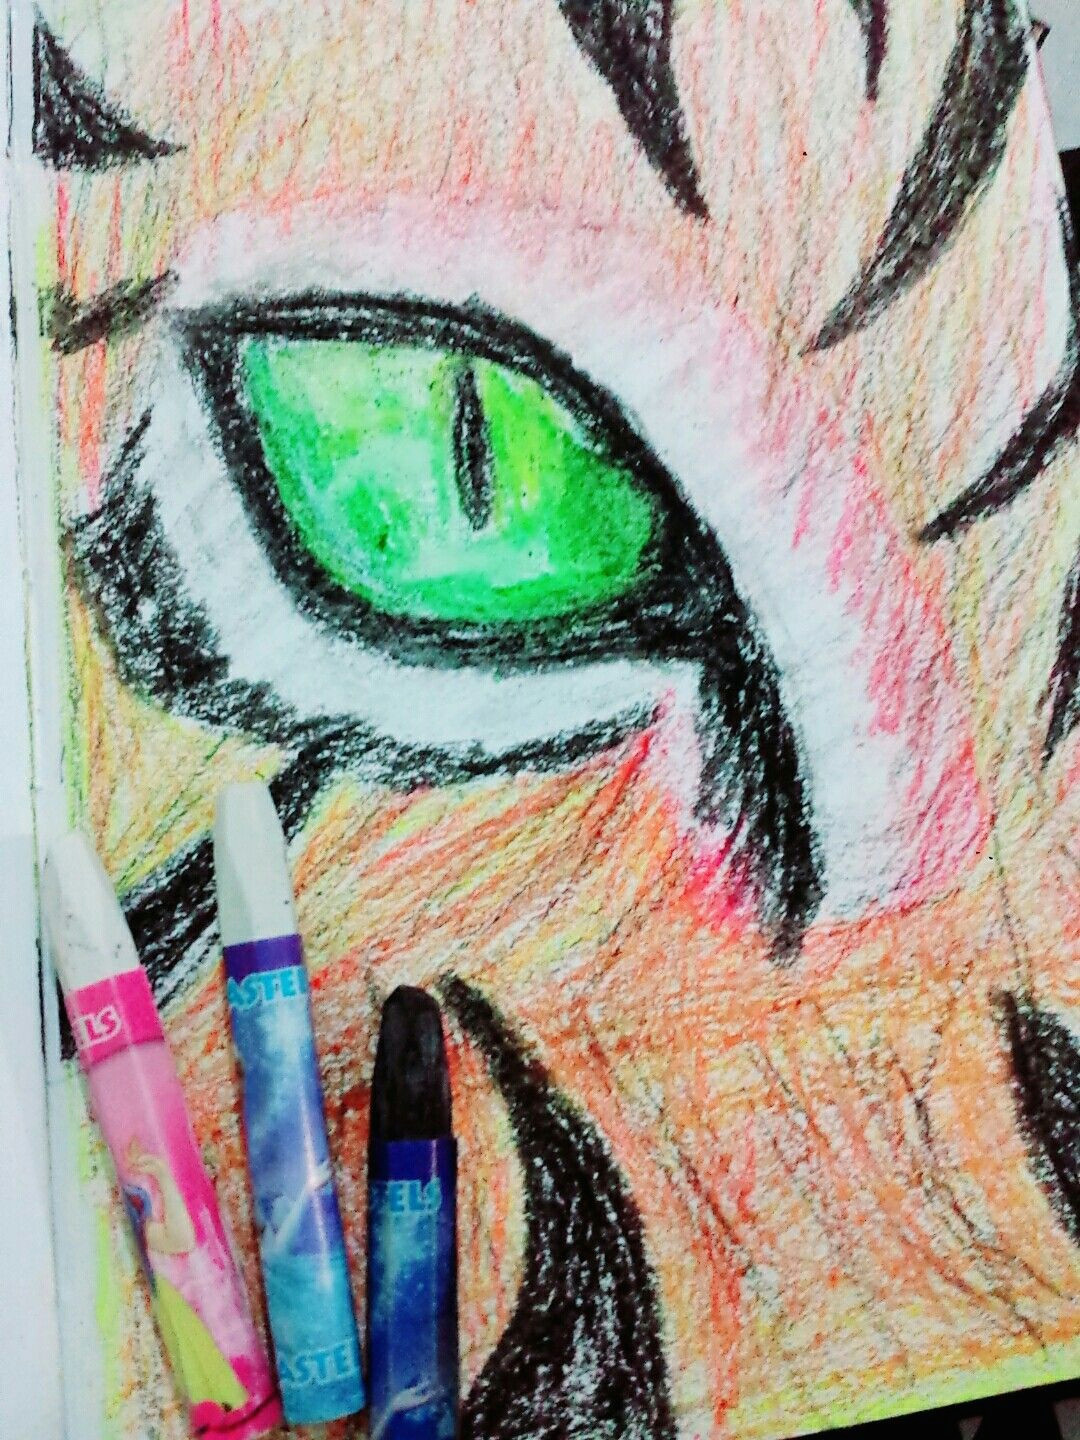 loin eye oil pastel drawing